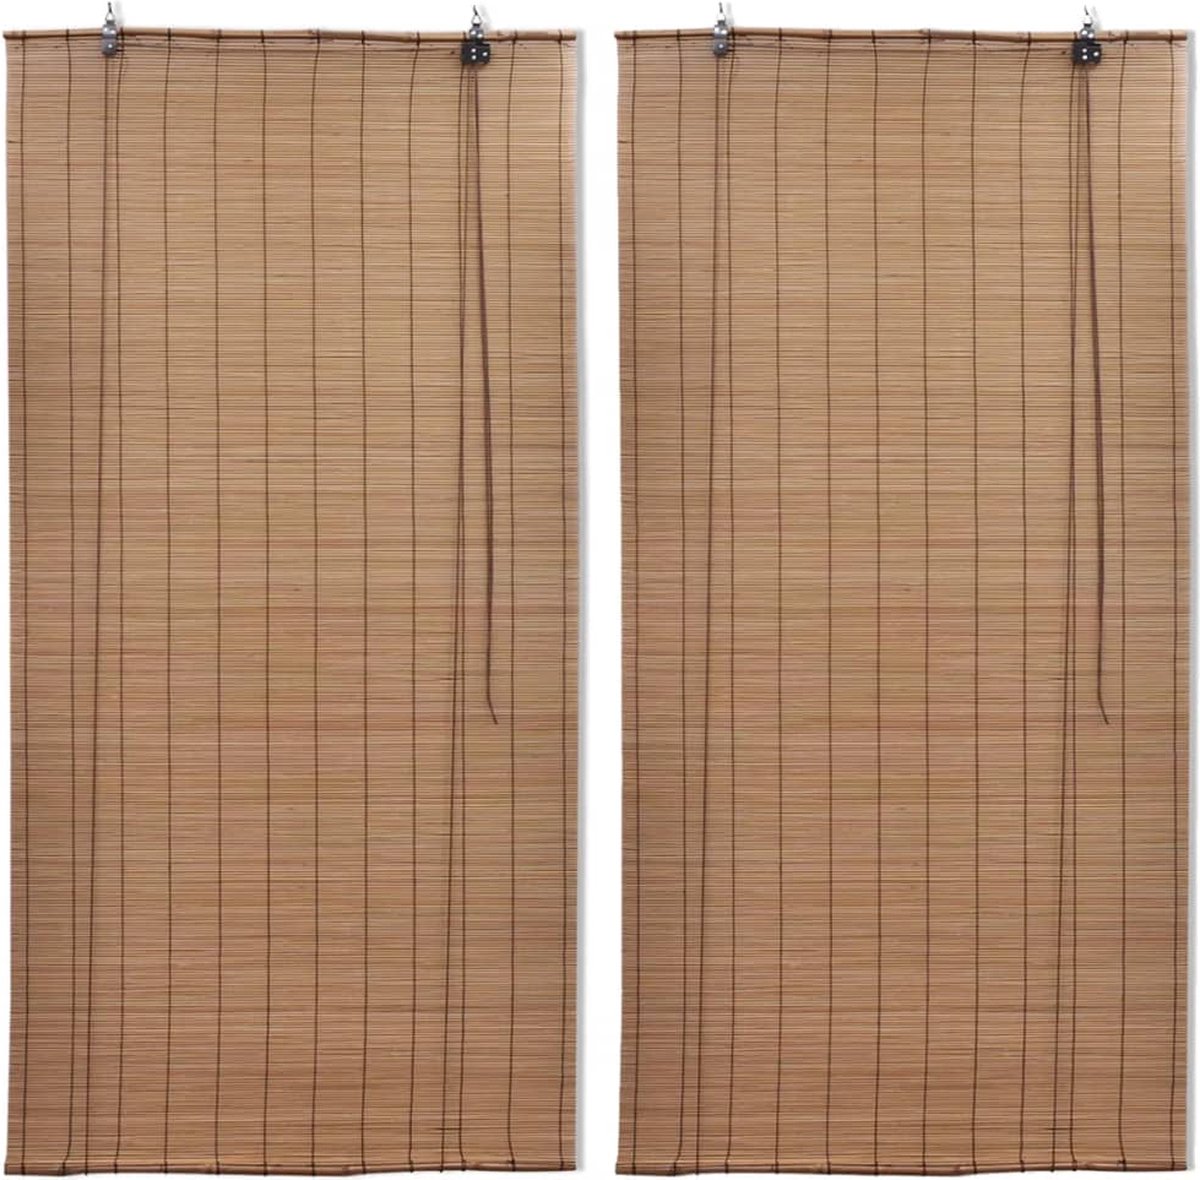 VidaLife Rolgordijnen 2 st 80x160 cm bamboe bruin